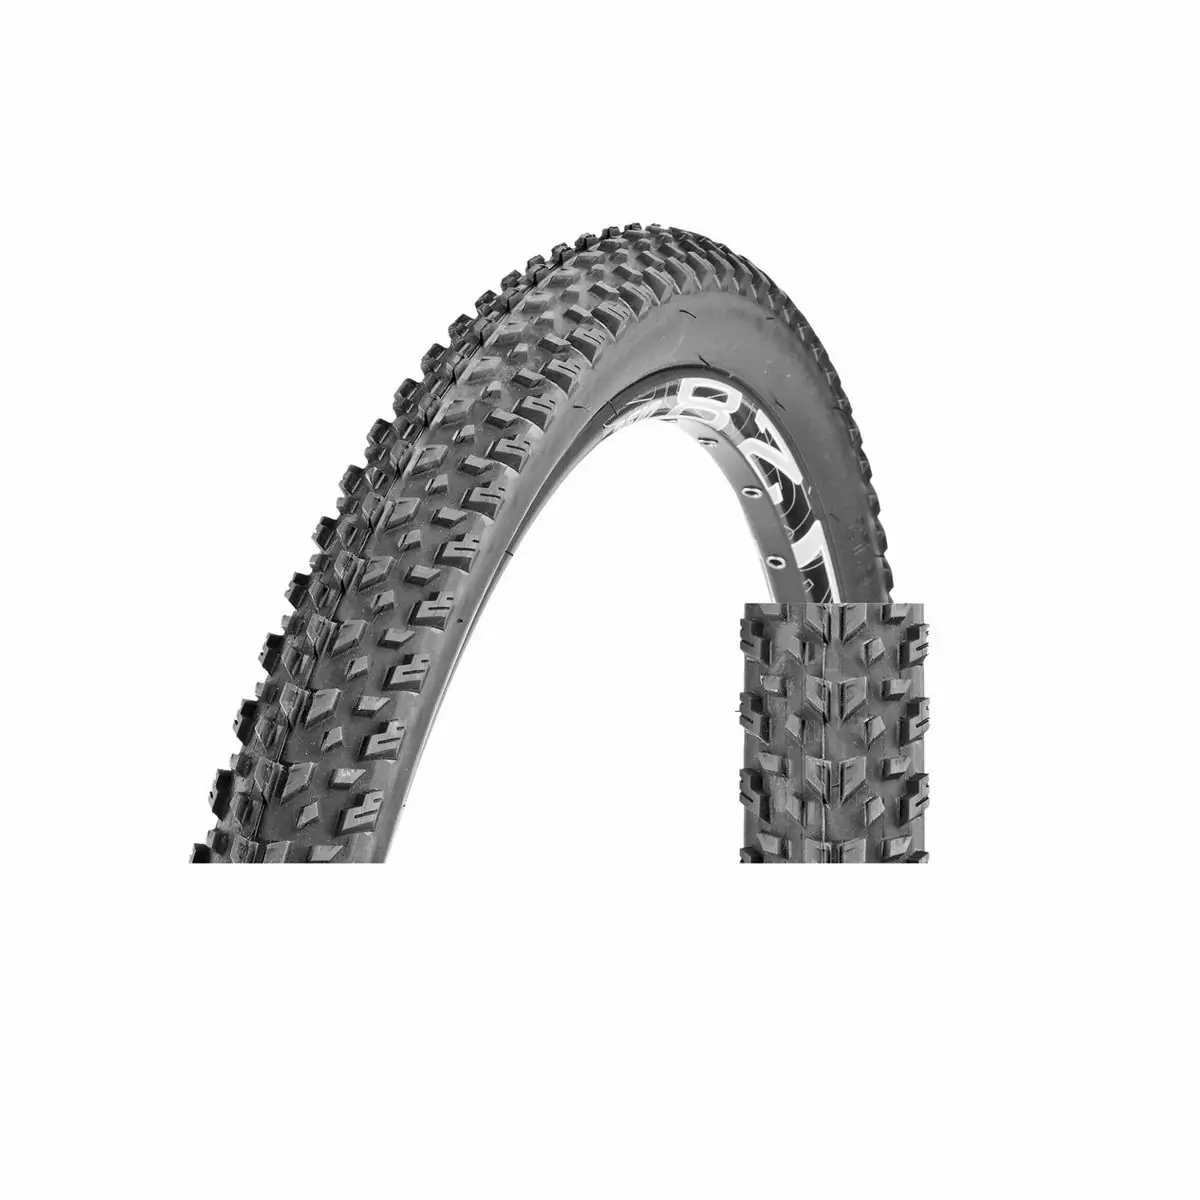 Tire Grand Canyon 27.5x2.80'' Single Compound 30TPI Wire Black - image